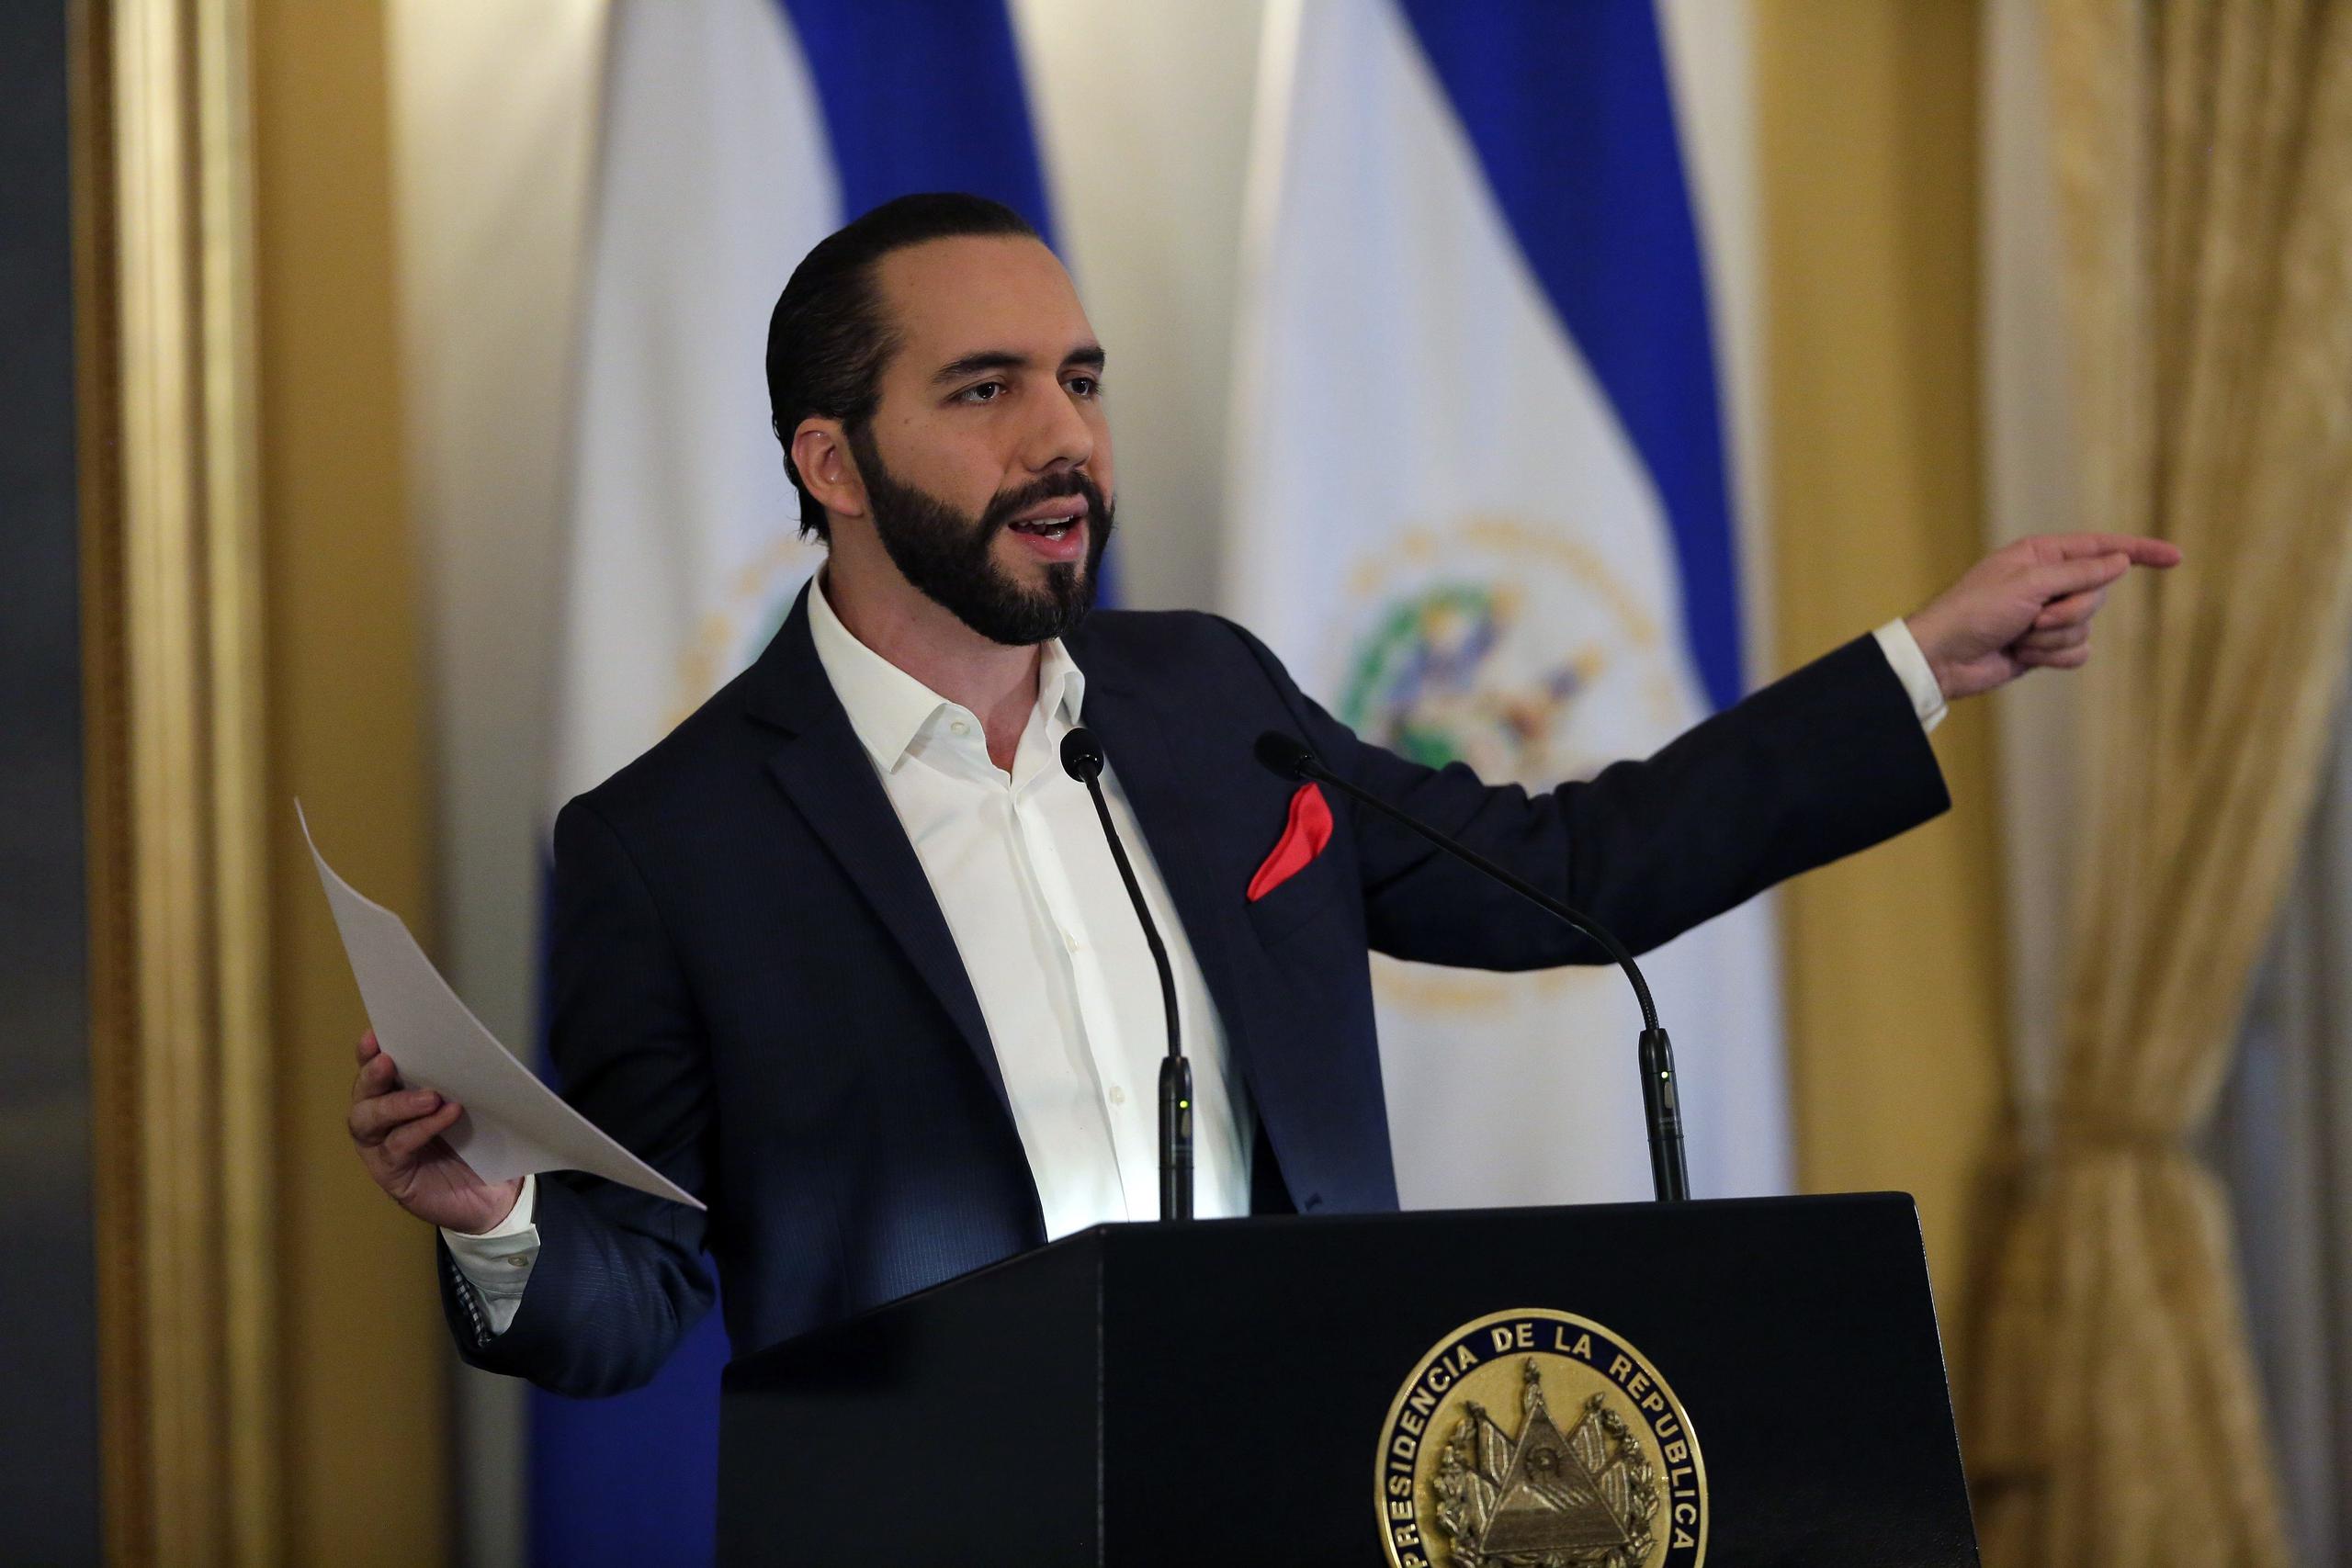 El presidente de El Salvador, Nayib Bukele, dijo que "el Gobierno se encargará de la defensa legal de quienes sean injustamente acusados, por defender la vida de la gente honrada"